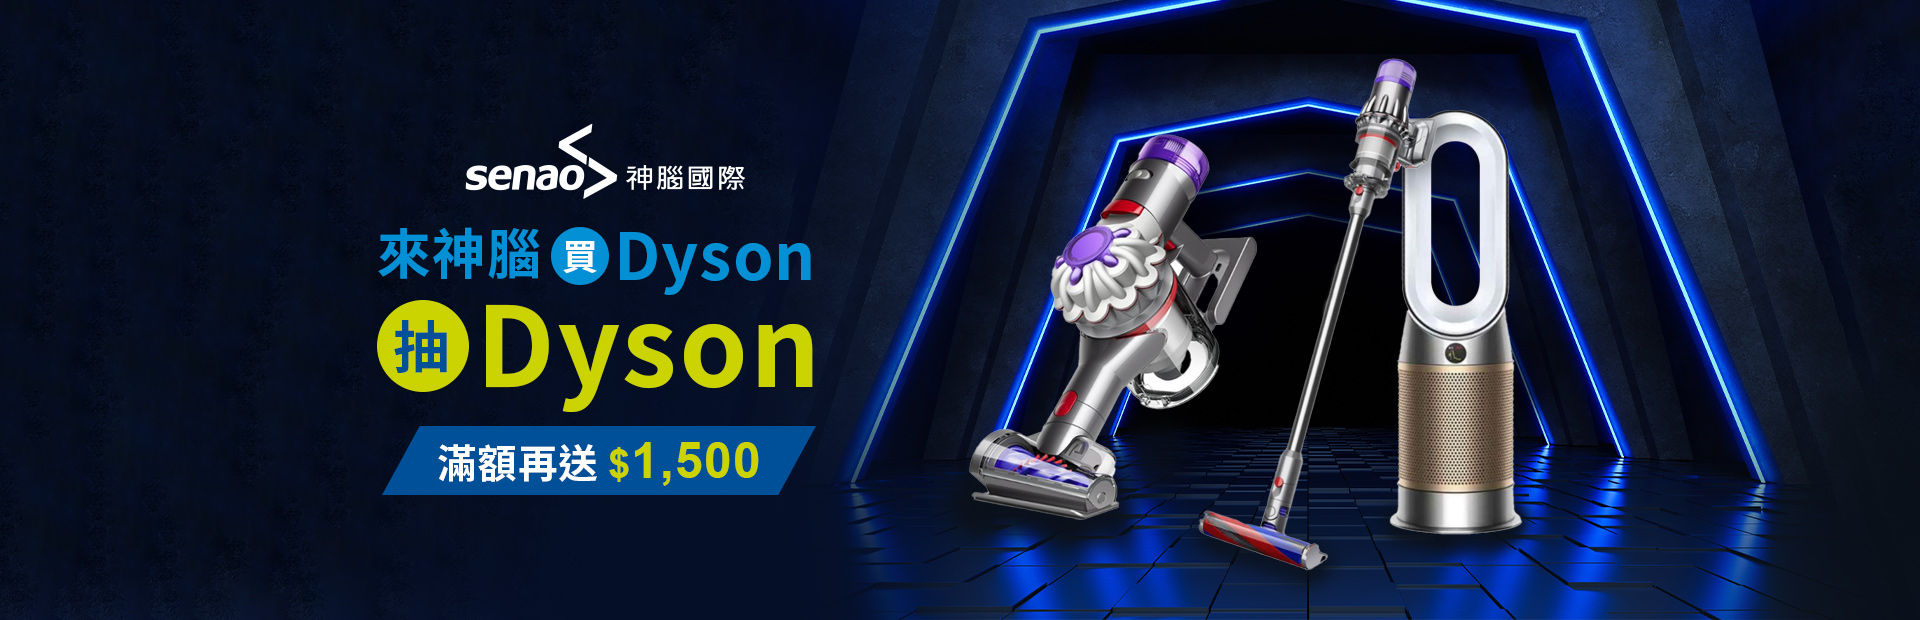 買Dyson抽Dyson，滿額再送$1,500